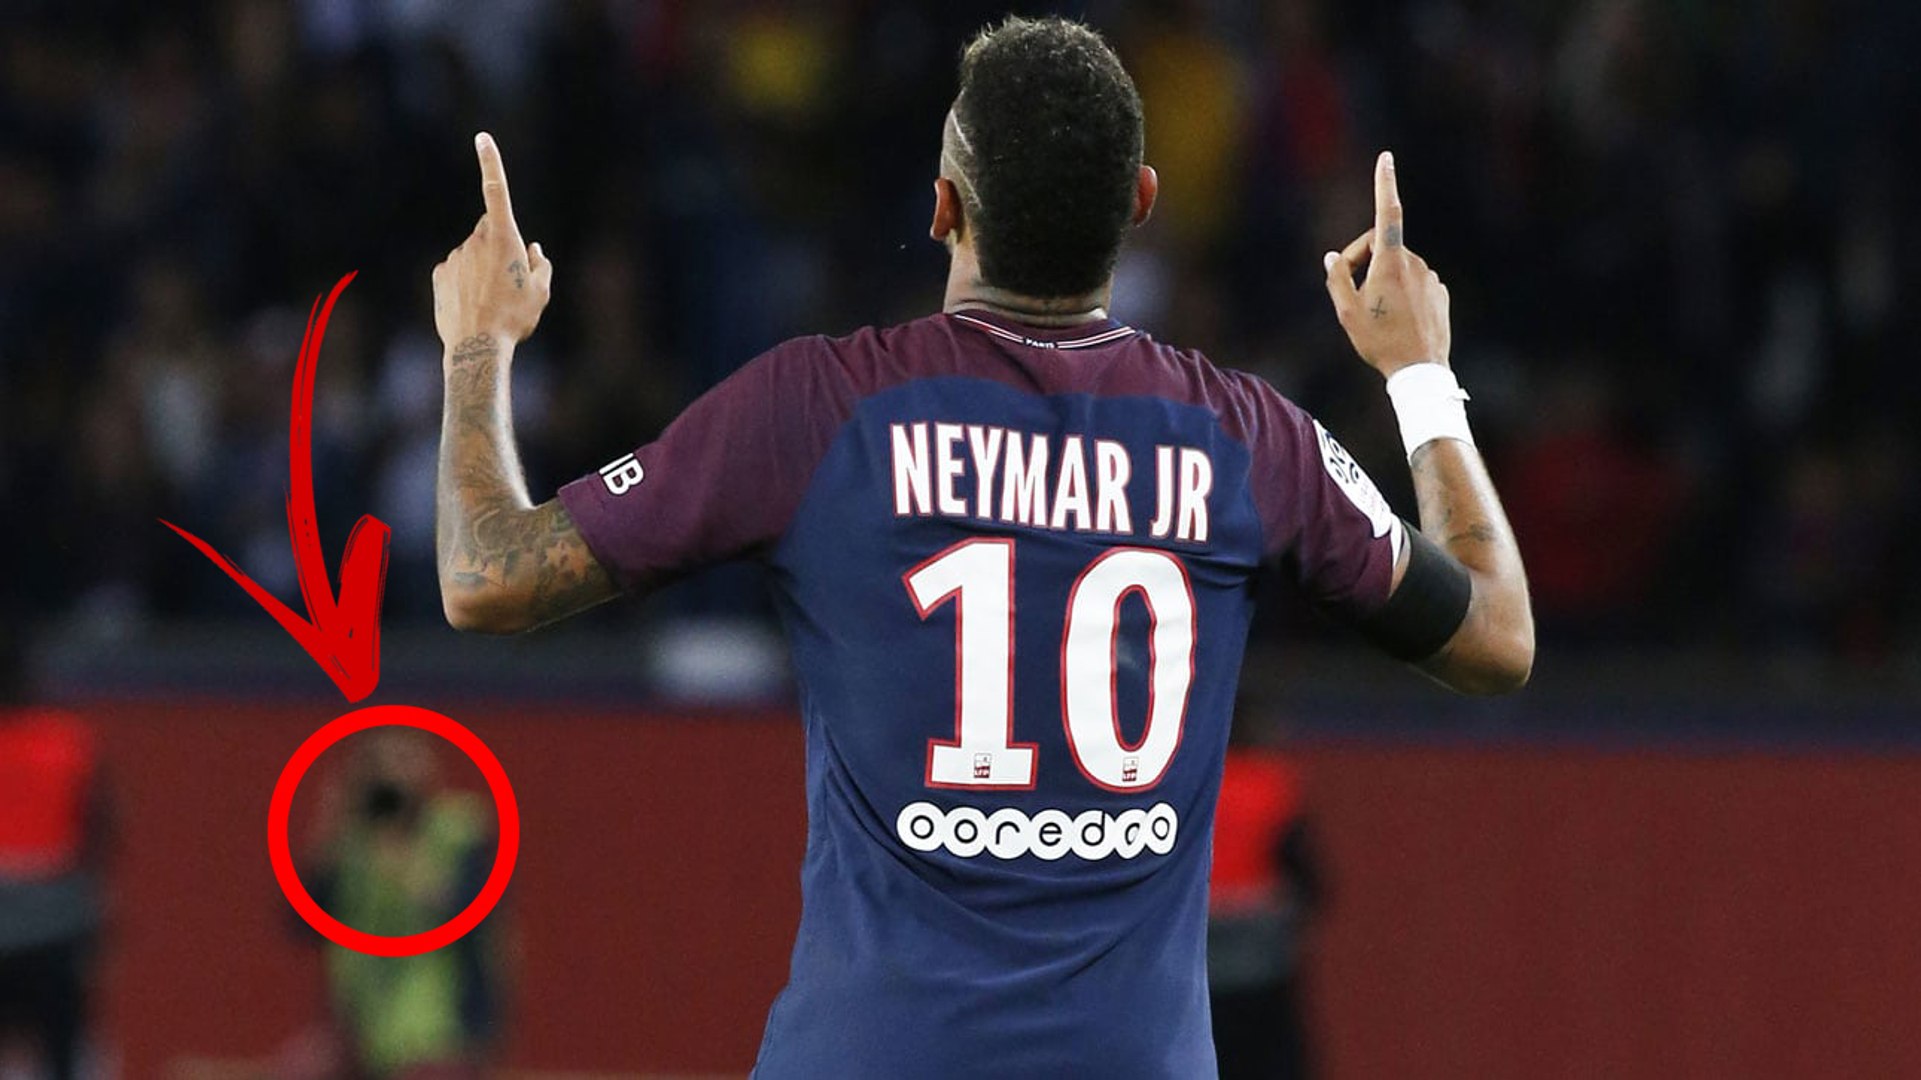 Antes de clássico, Neymar descontrai, faz careta e tira onda com 'parça